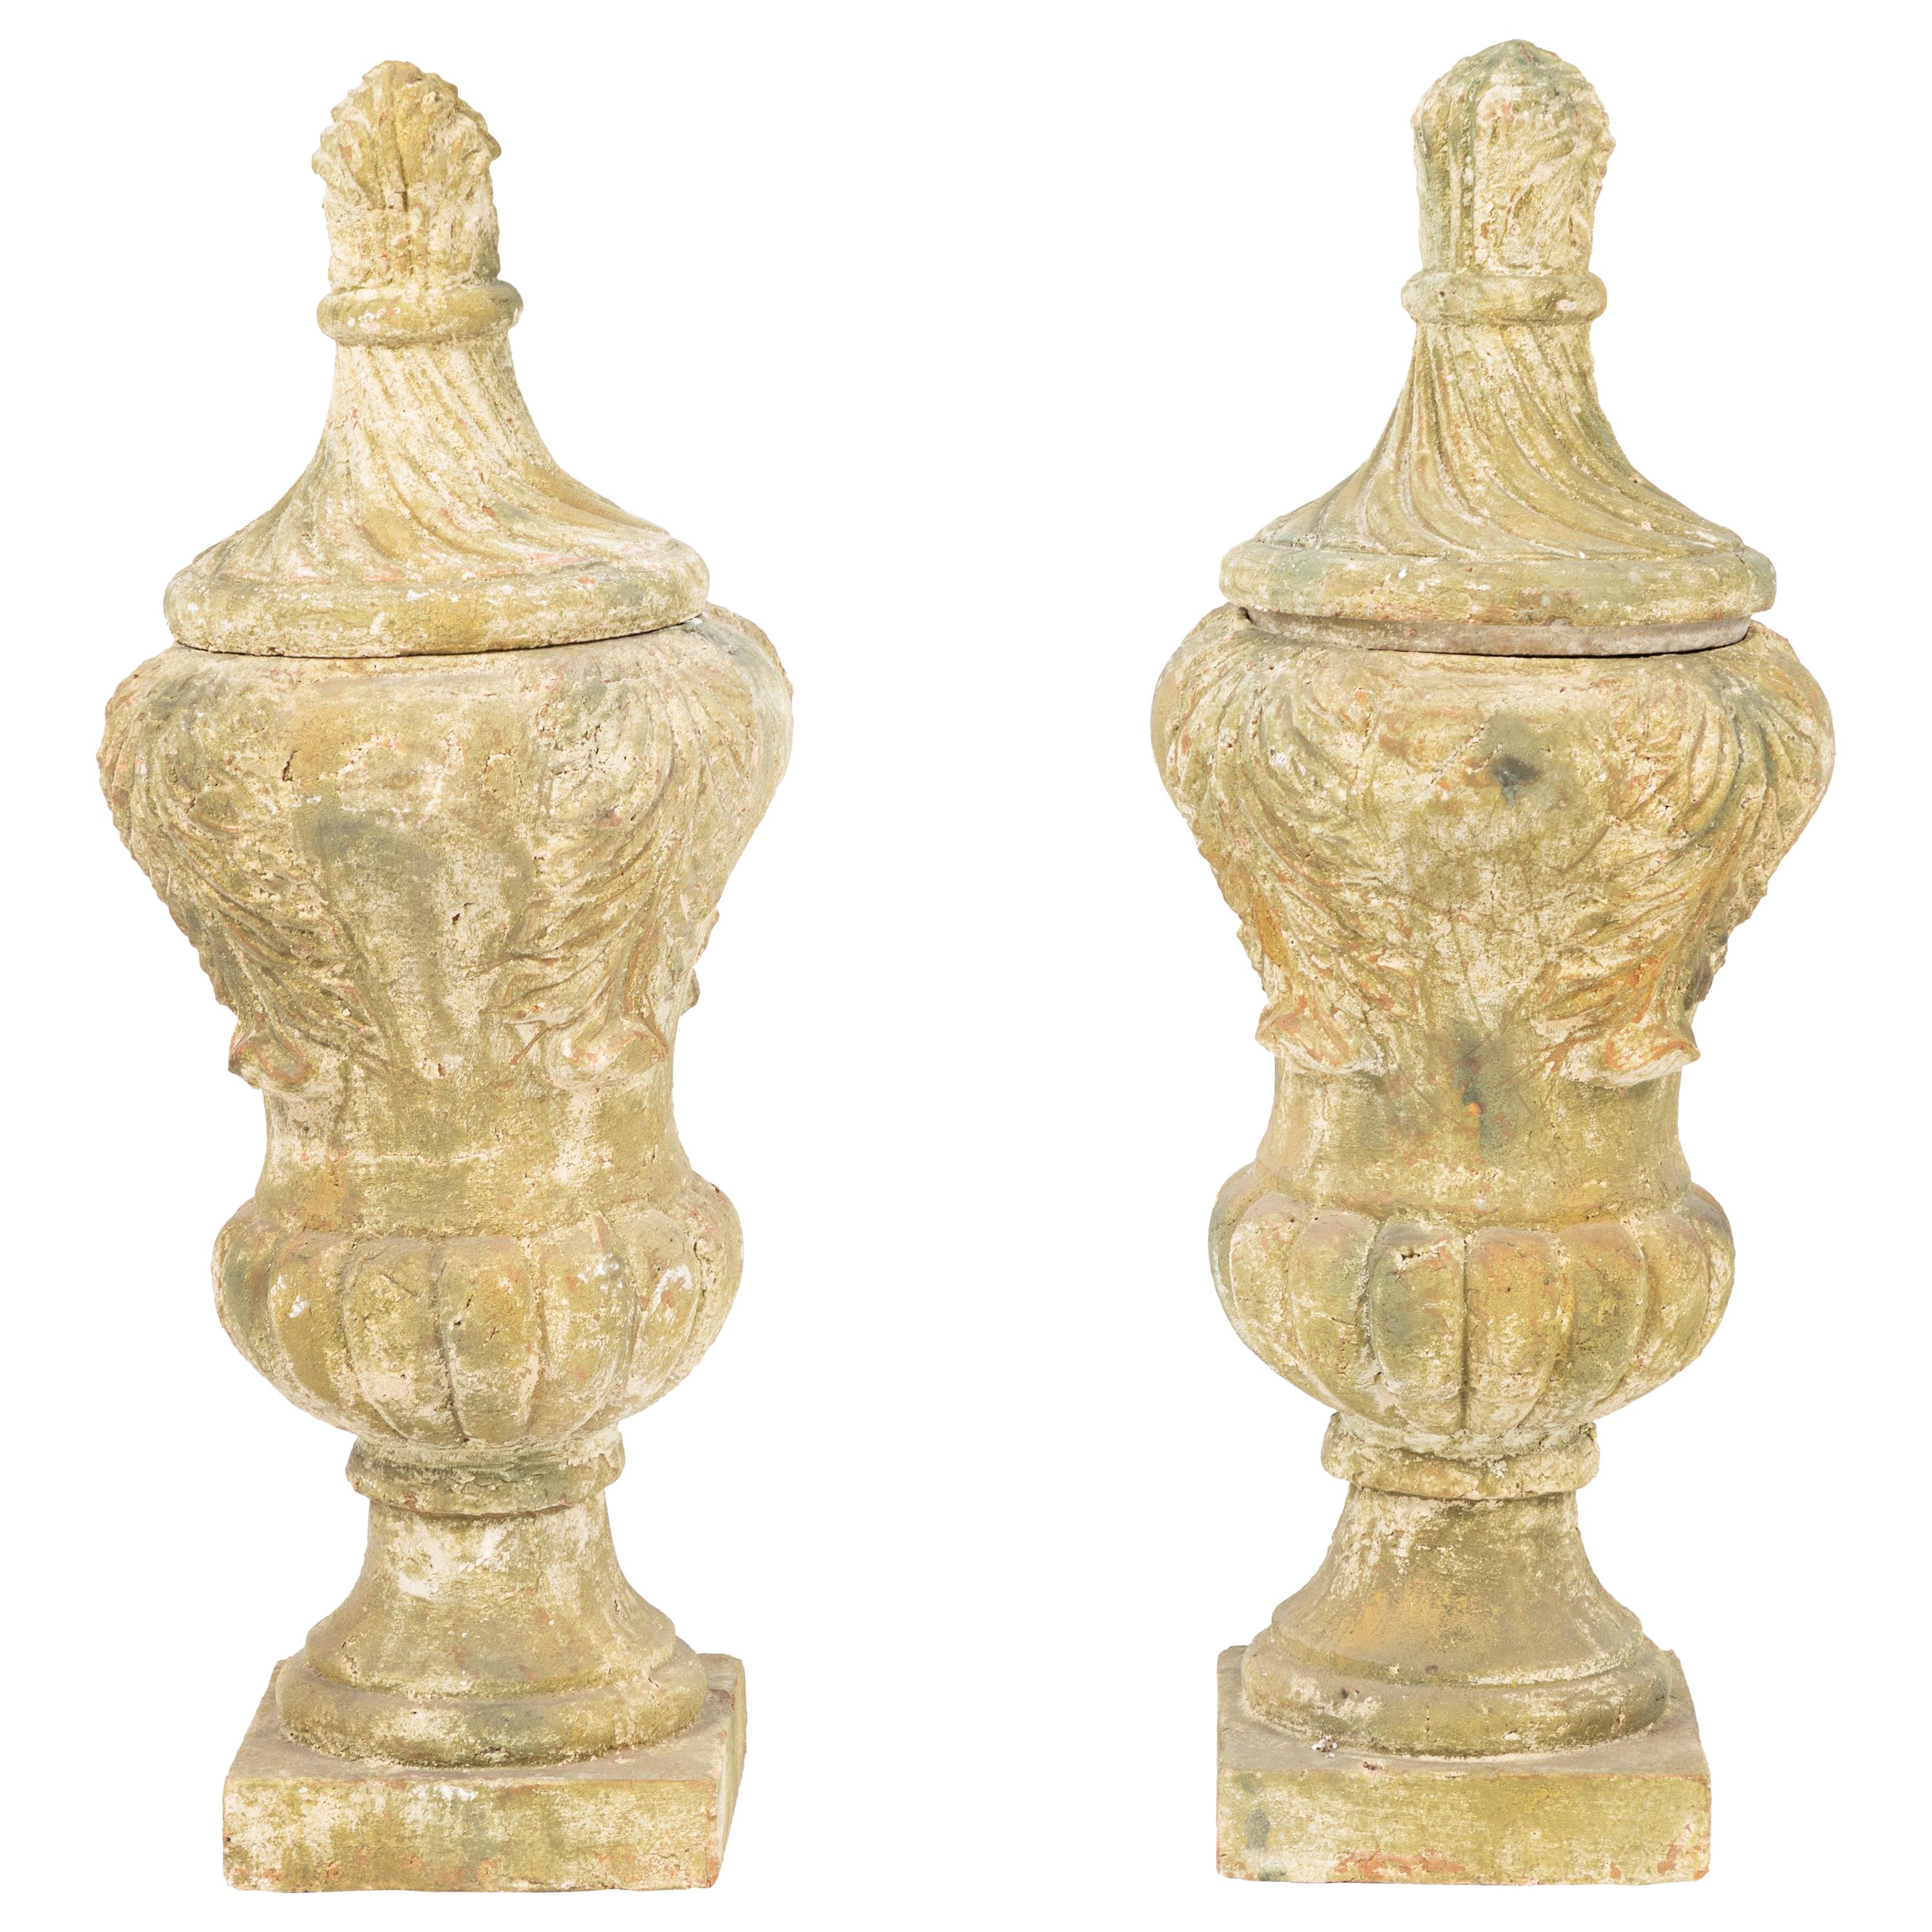 Pair of Terracotta Covered Garden Urns